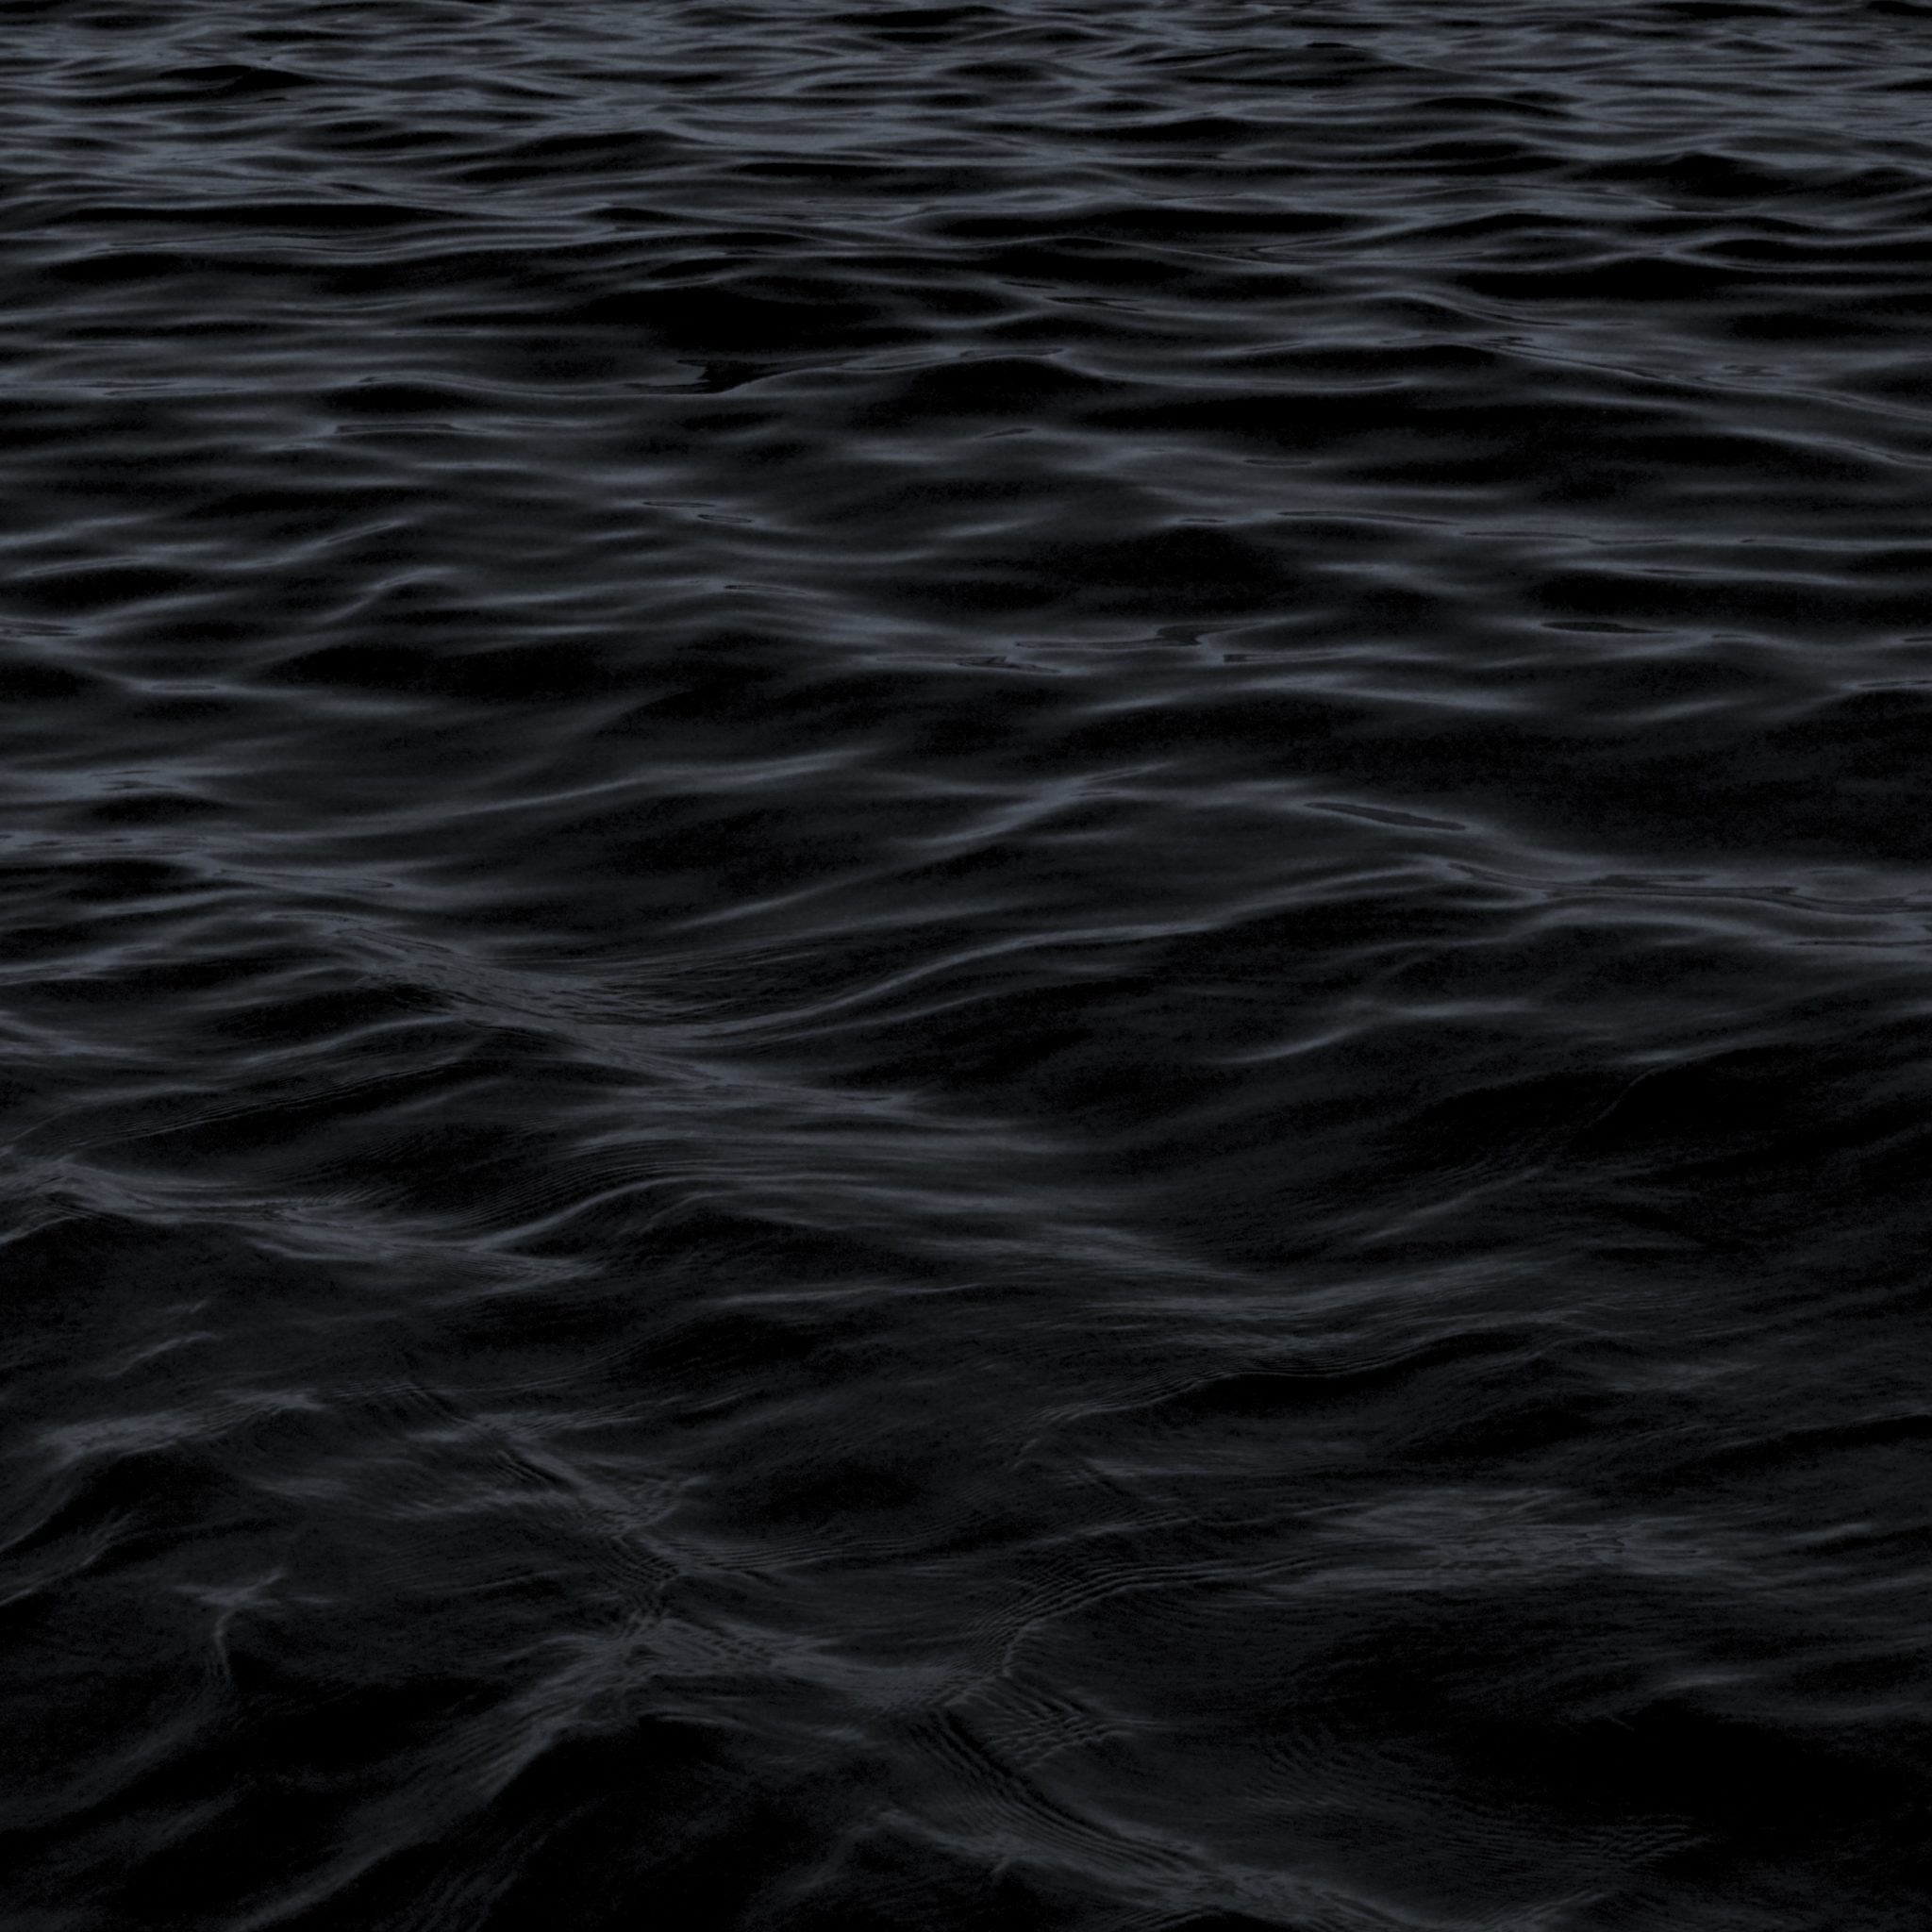 2048x2048 wallpapers iPad retina Dark Water Waves Sea Pattern iPad Wallpaper 2048x2048 pixels resolution